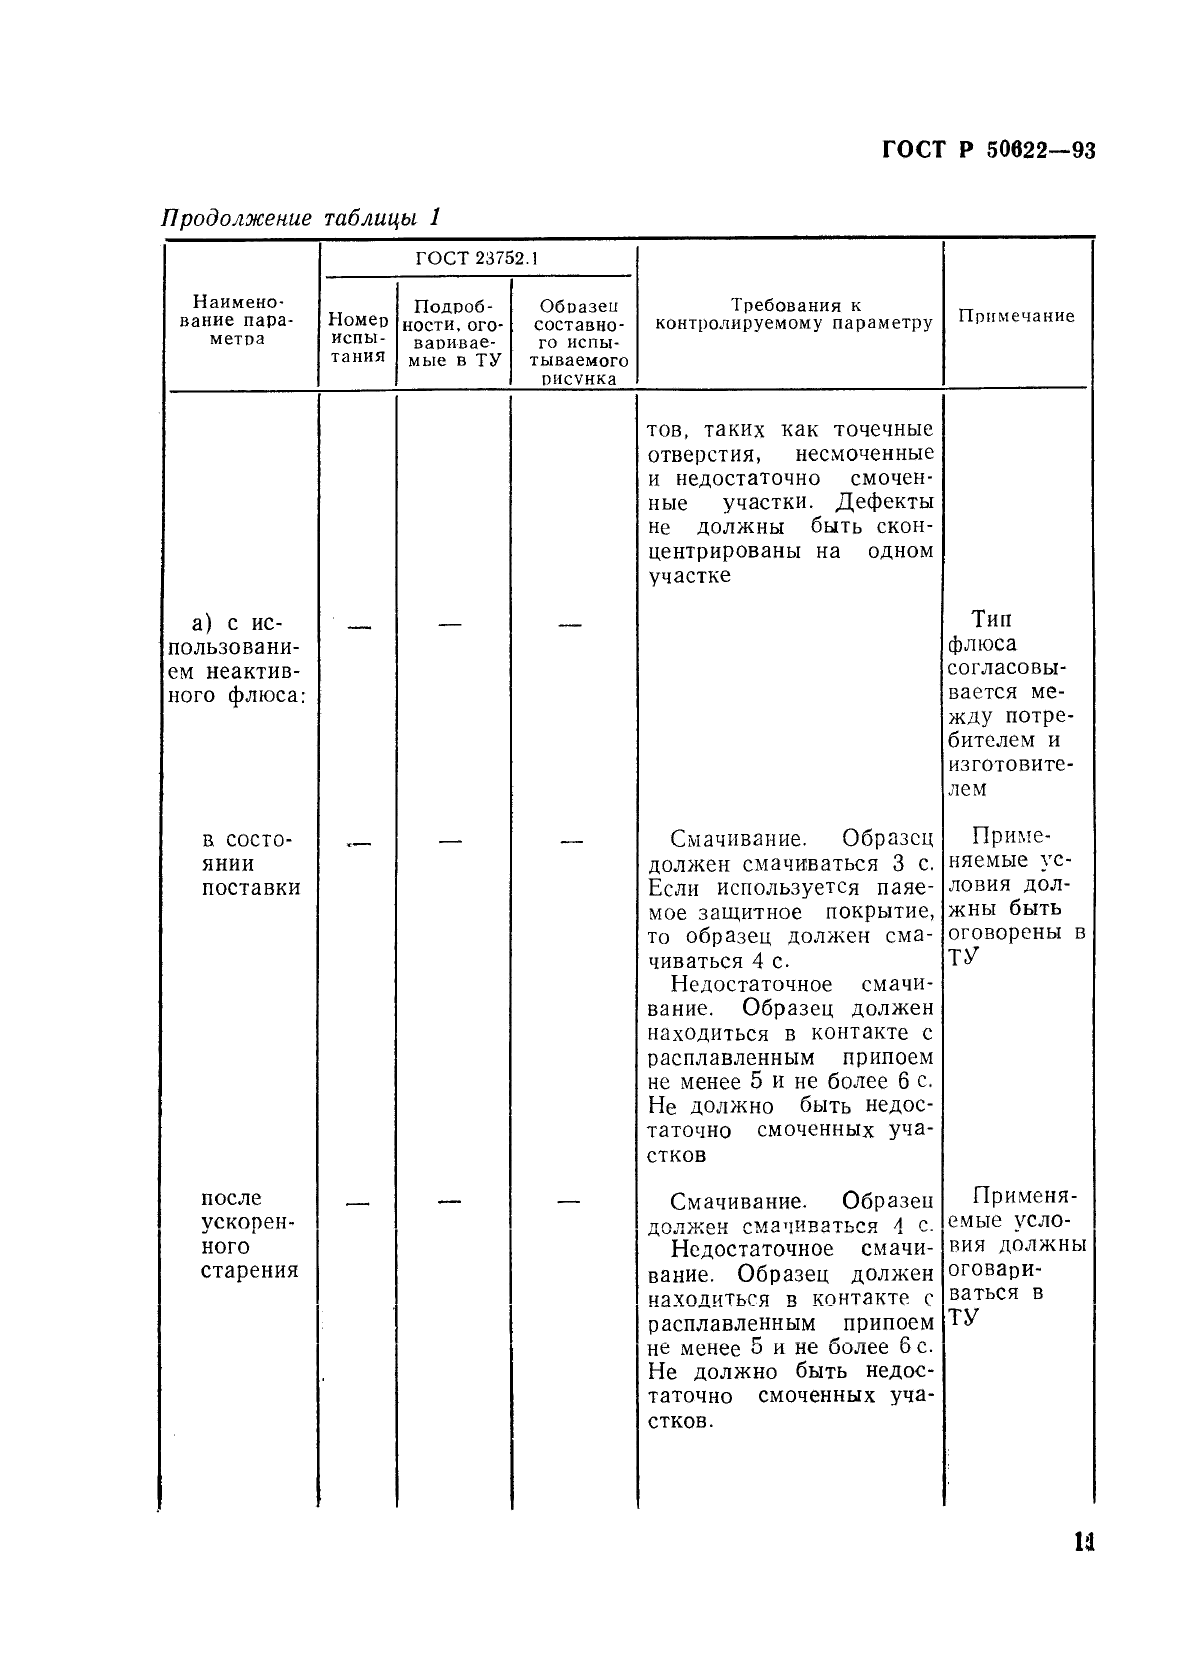 ГОСТ Р 50622-93 Платы печатные двусторонние с металлизированными отверстиями. Общие технические требования (фото 14 из 22)